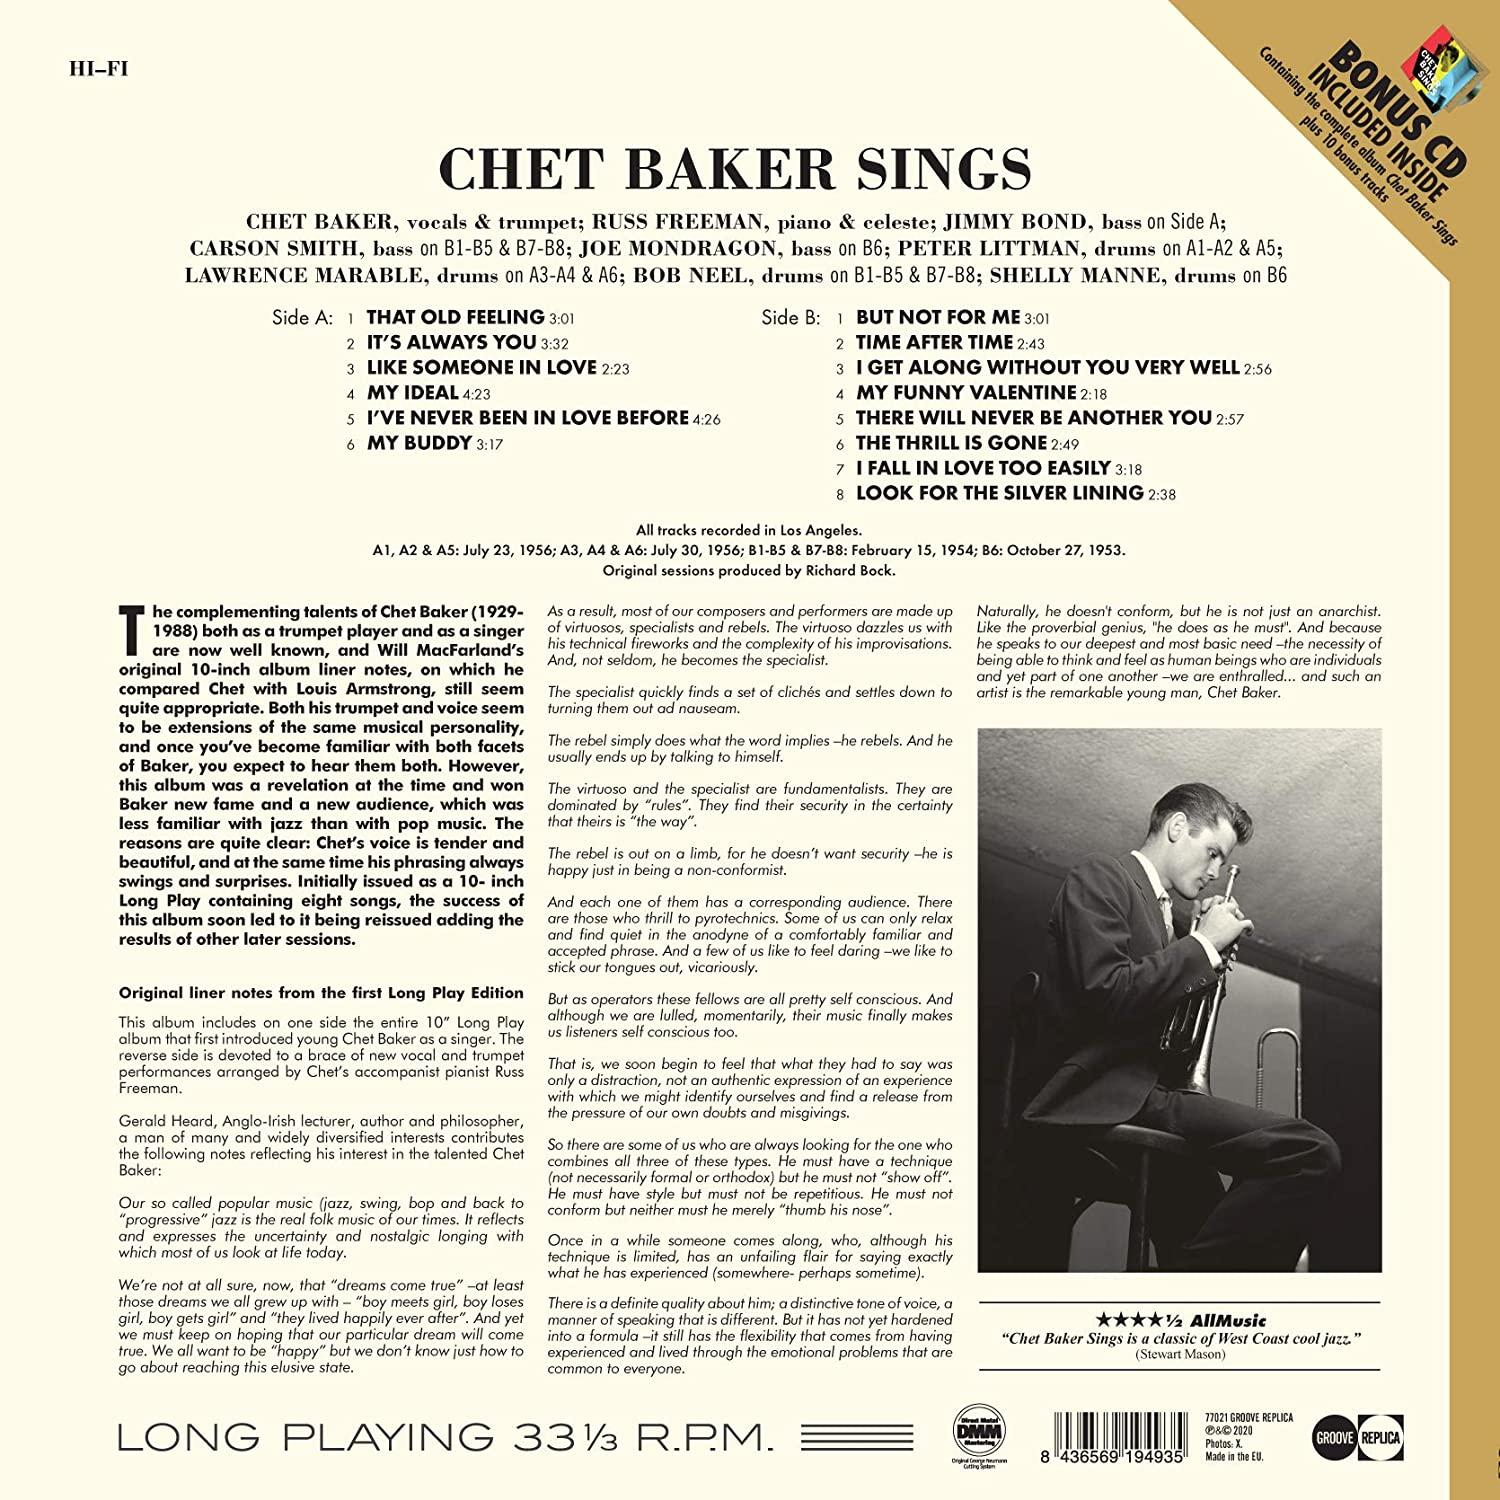 Bonus-CD) - SINGS+10 BONUS Baker Chet (180G+BONUS) - + (LP TRACKS